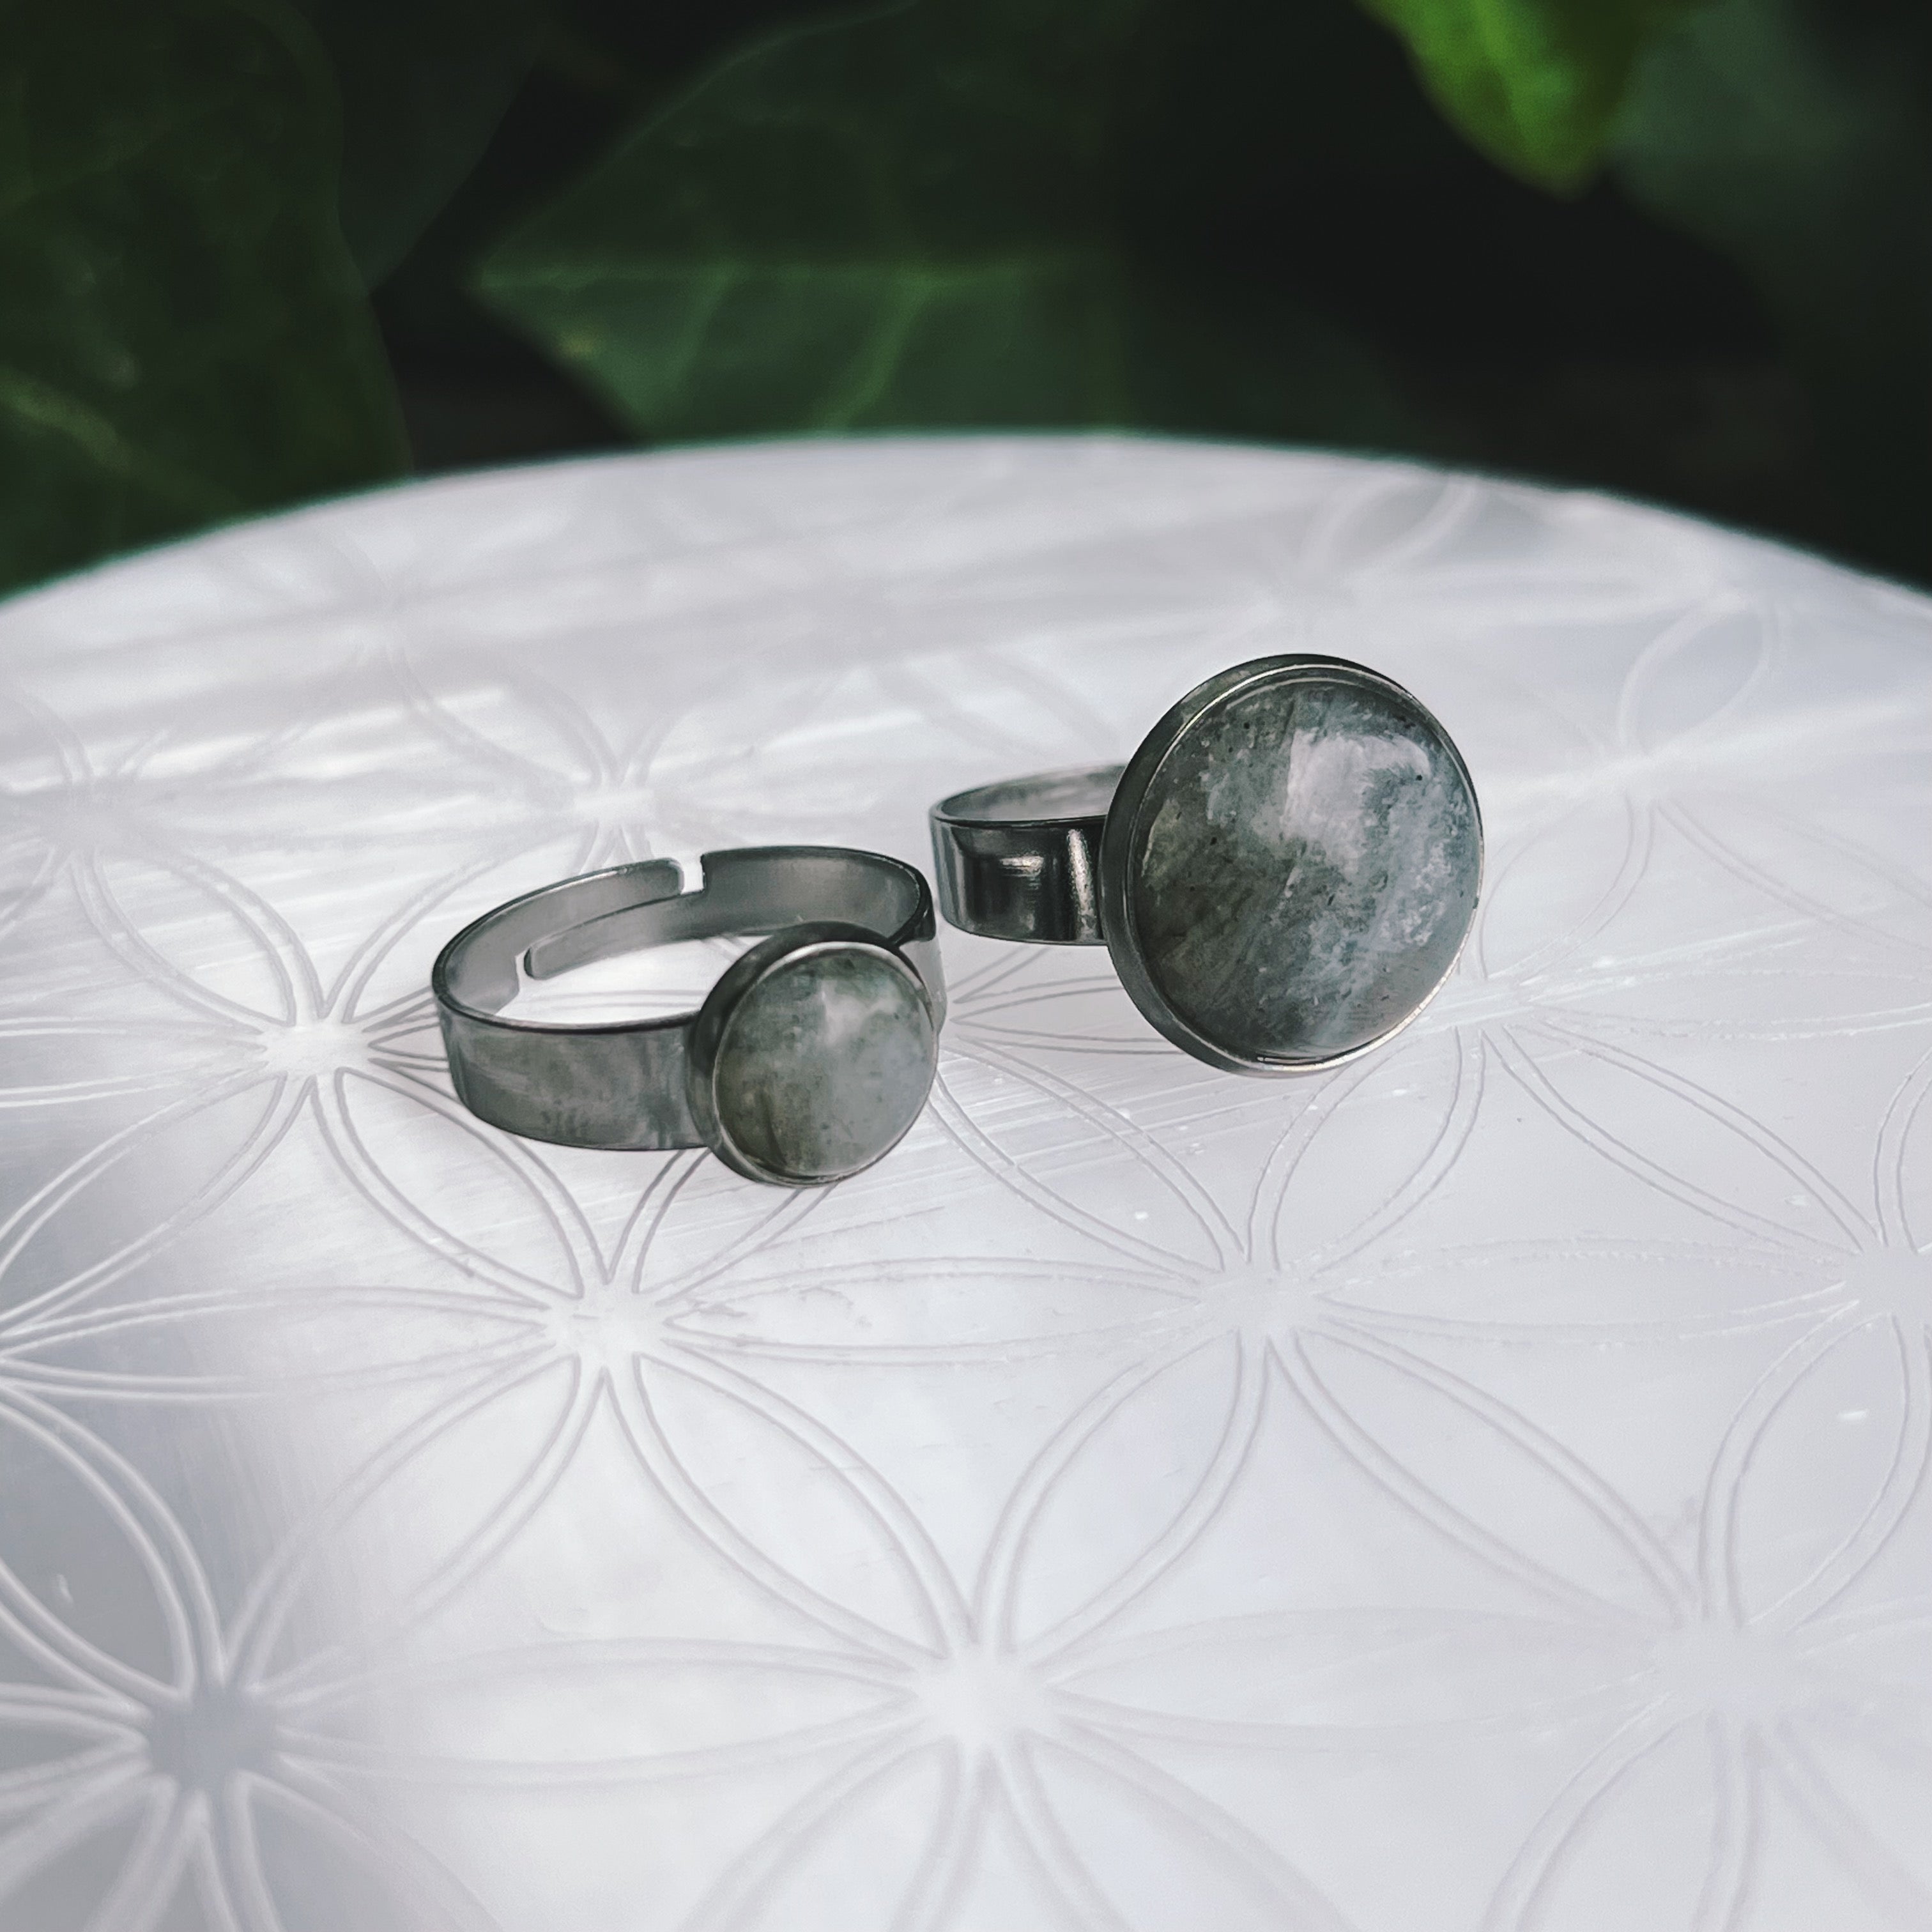 (1) Labradorite Stainless Steel Adjustable Ring